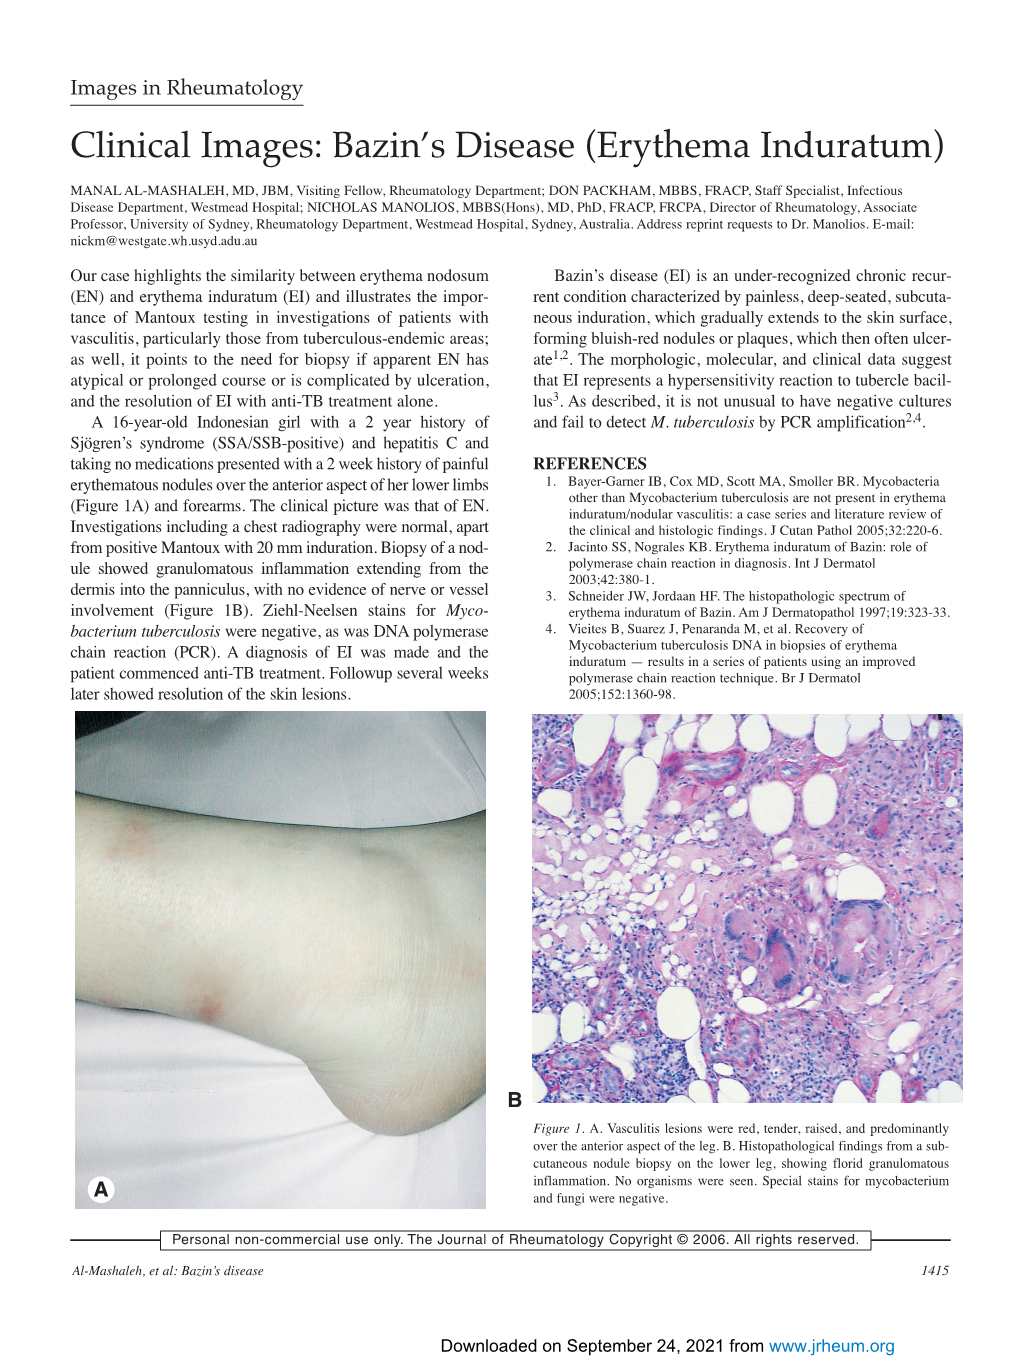 Bazin's Disease (Erythema Induratum)